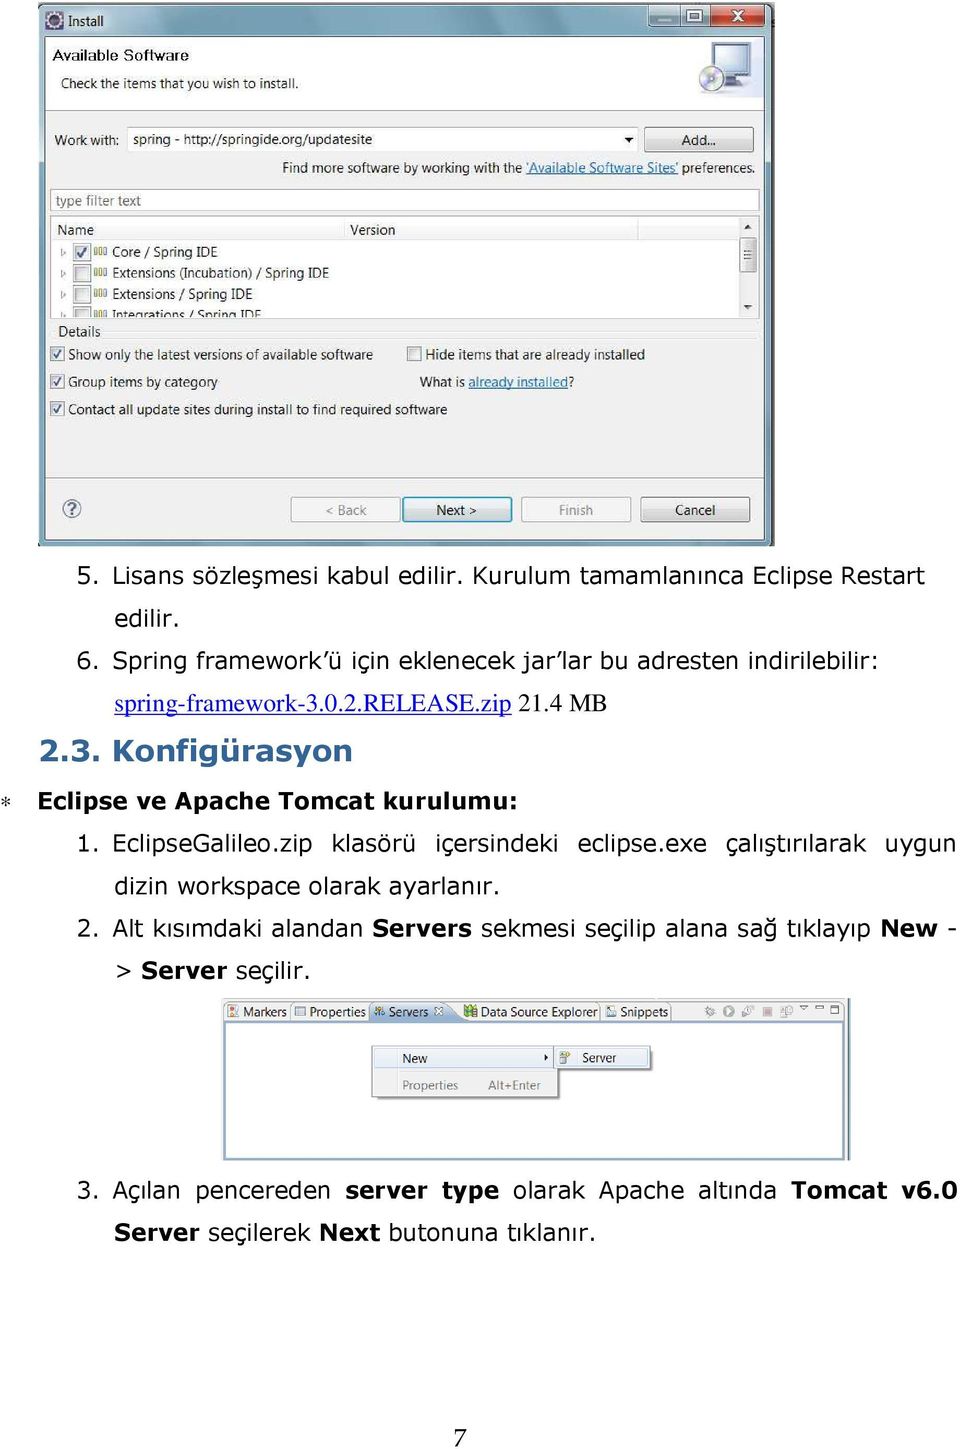 EclipseGalileo.zip klasörü içersindeki eclipse.exe çalıştırılarak uygun dizin workspace olarak ayarlanır. 2.